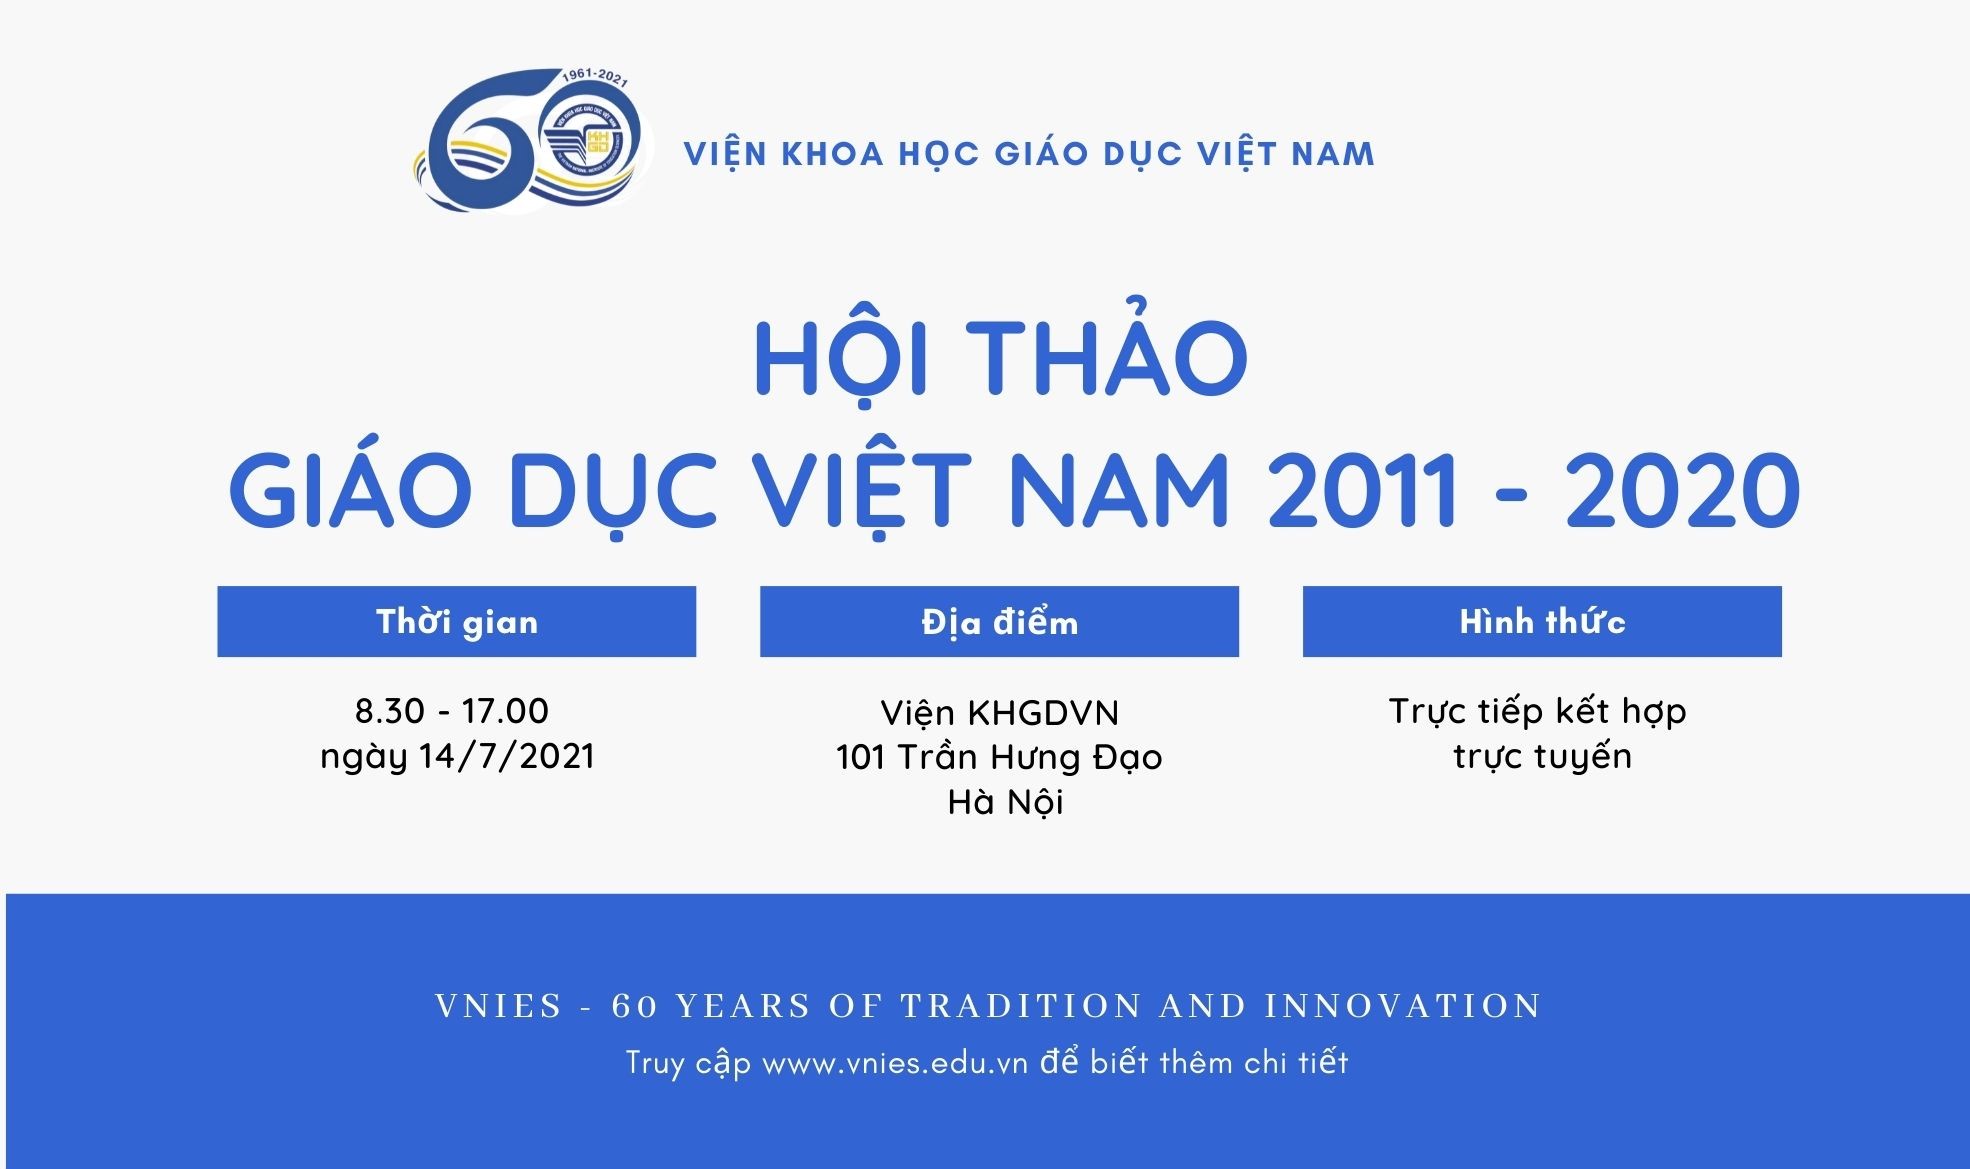 Thông báo Hội thảo Giáo dục Việt Nam 2011 - 2020